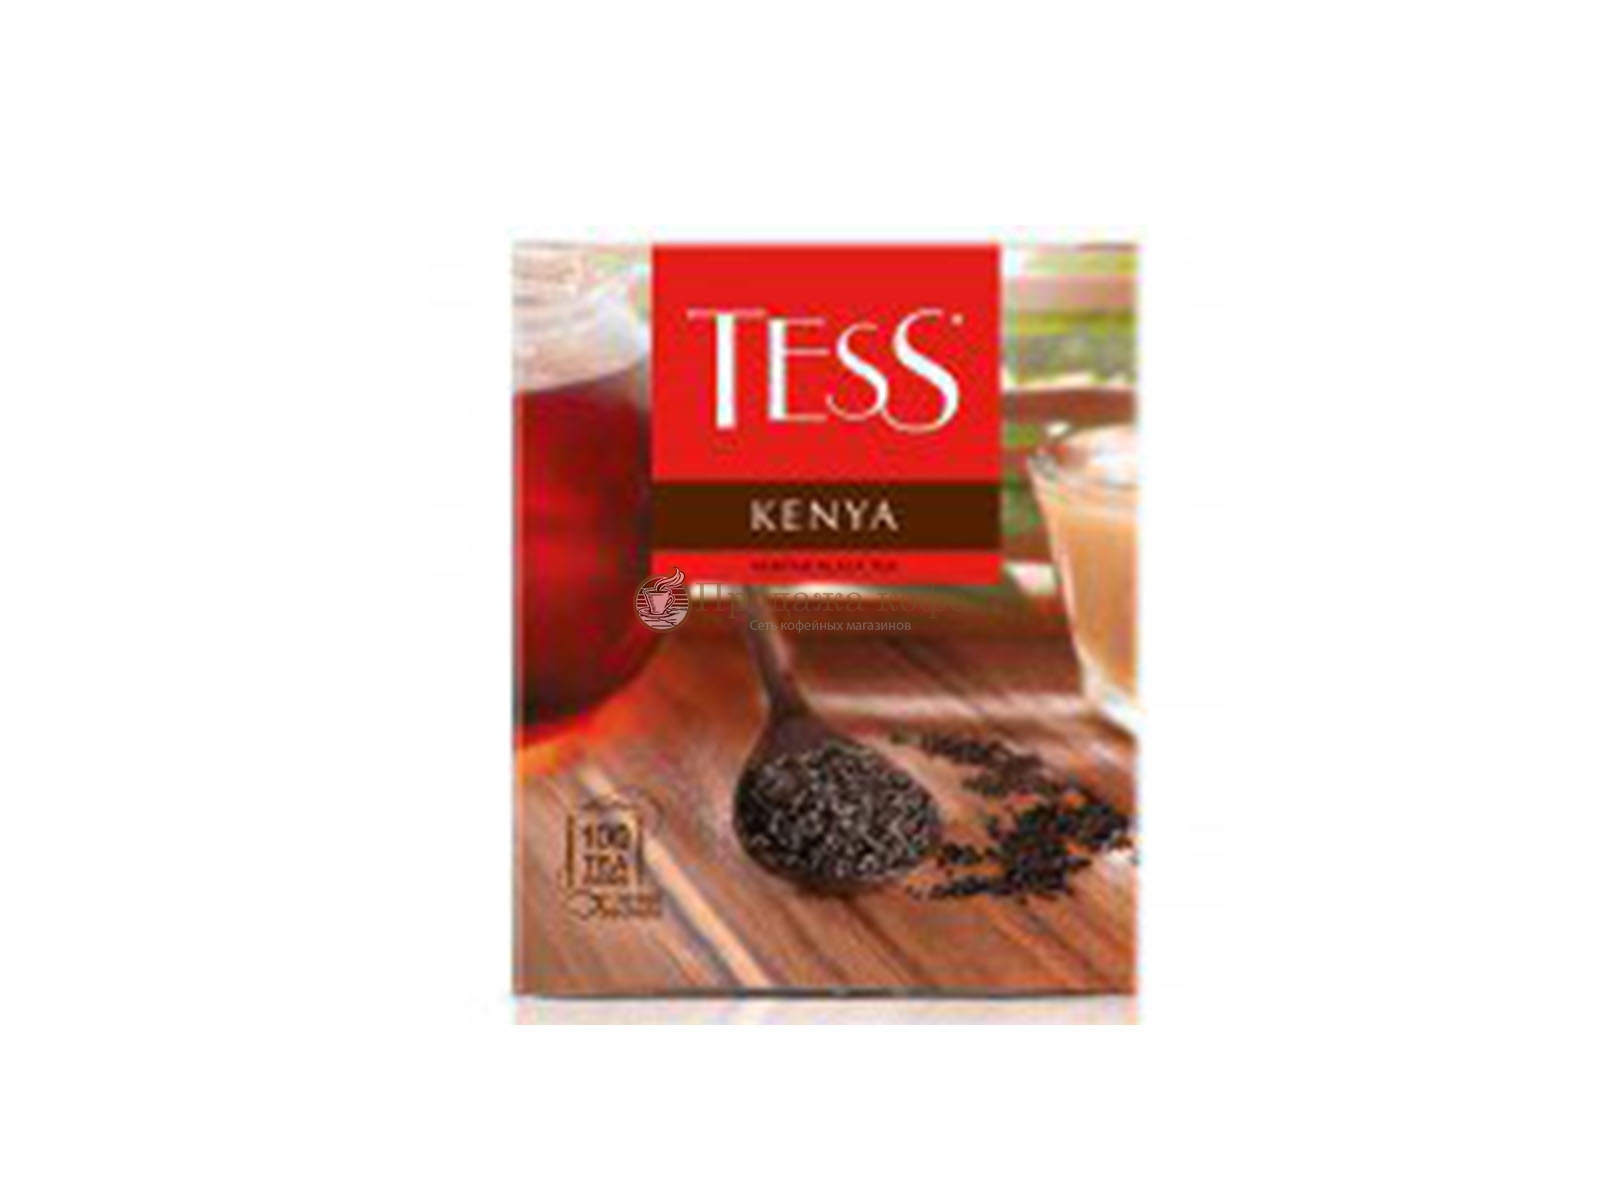 Чай TESS (Тесс) Kenya, черный пакетированный,  100 шт/уп